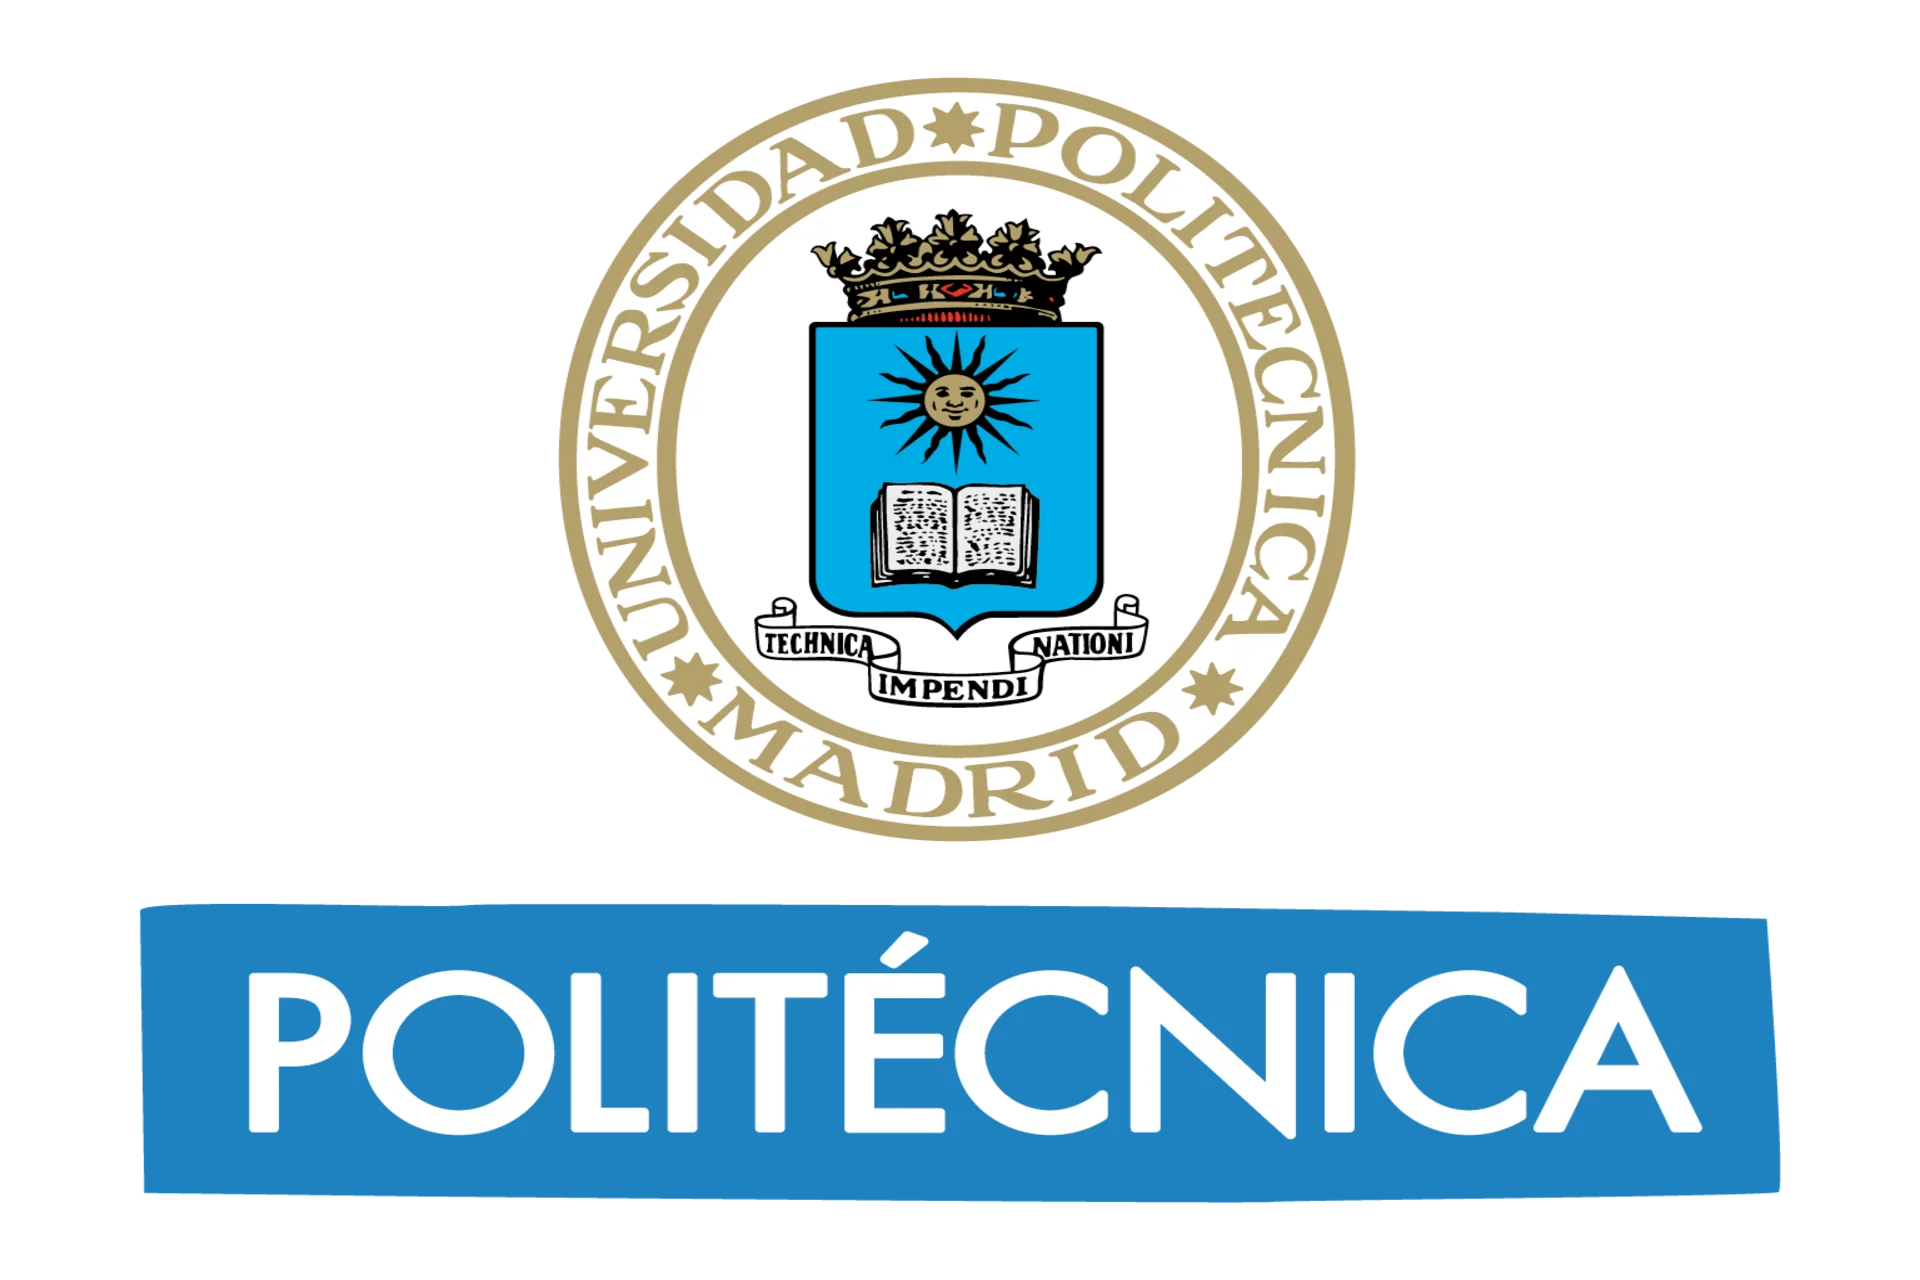 Información Universidad Politécnica de Madrid